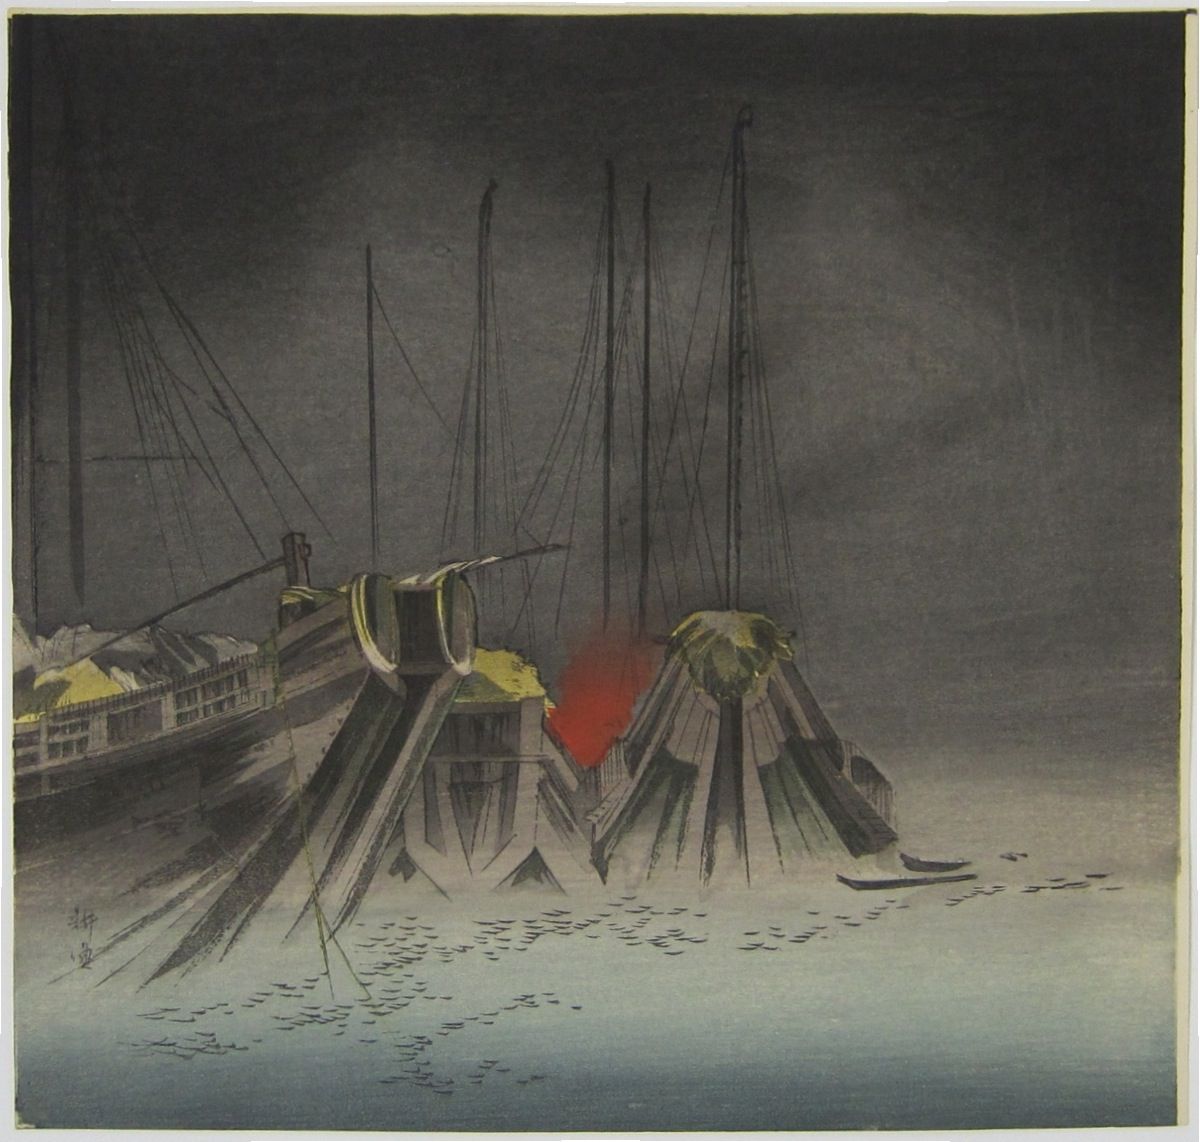 Ships at night. c.1900